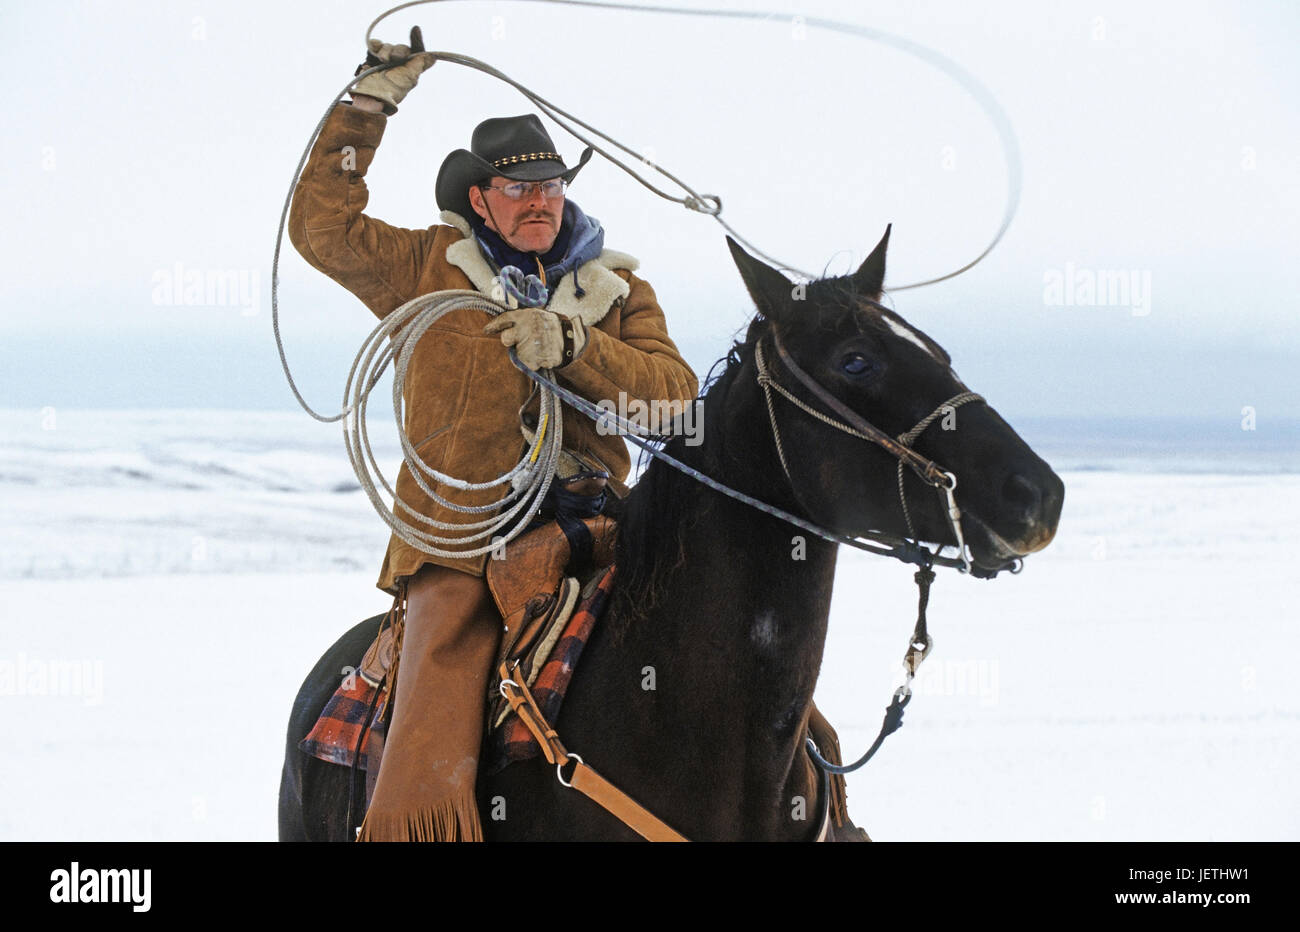 Cowboy swings lasso, Canada, Cowboy schwingt Lasso - Kanada Stock Photo